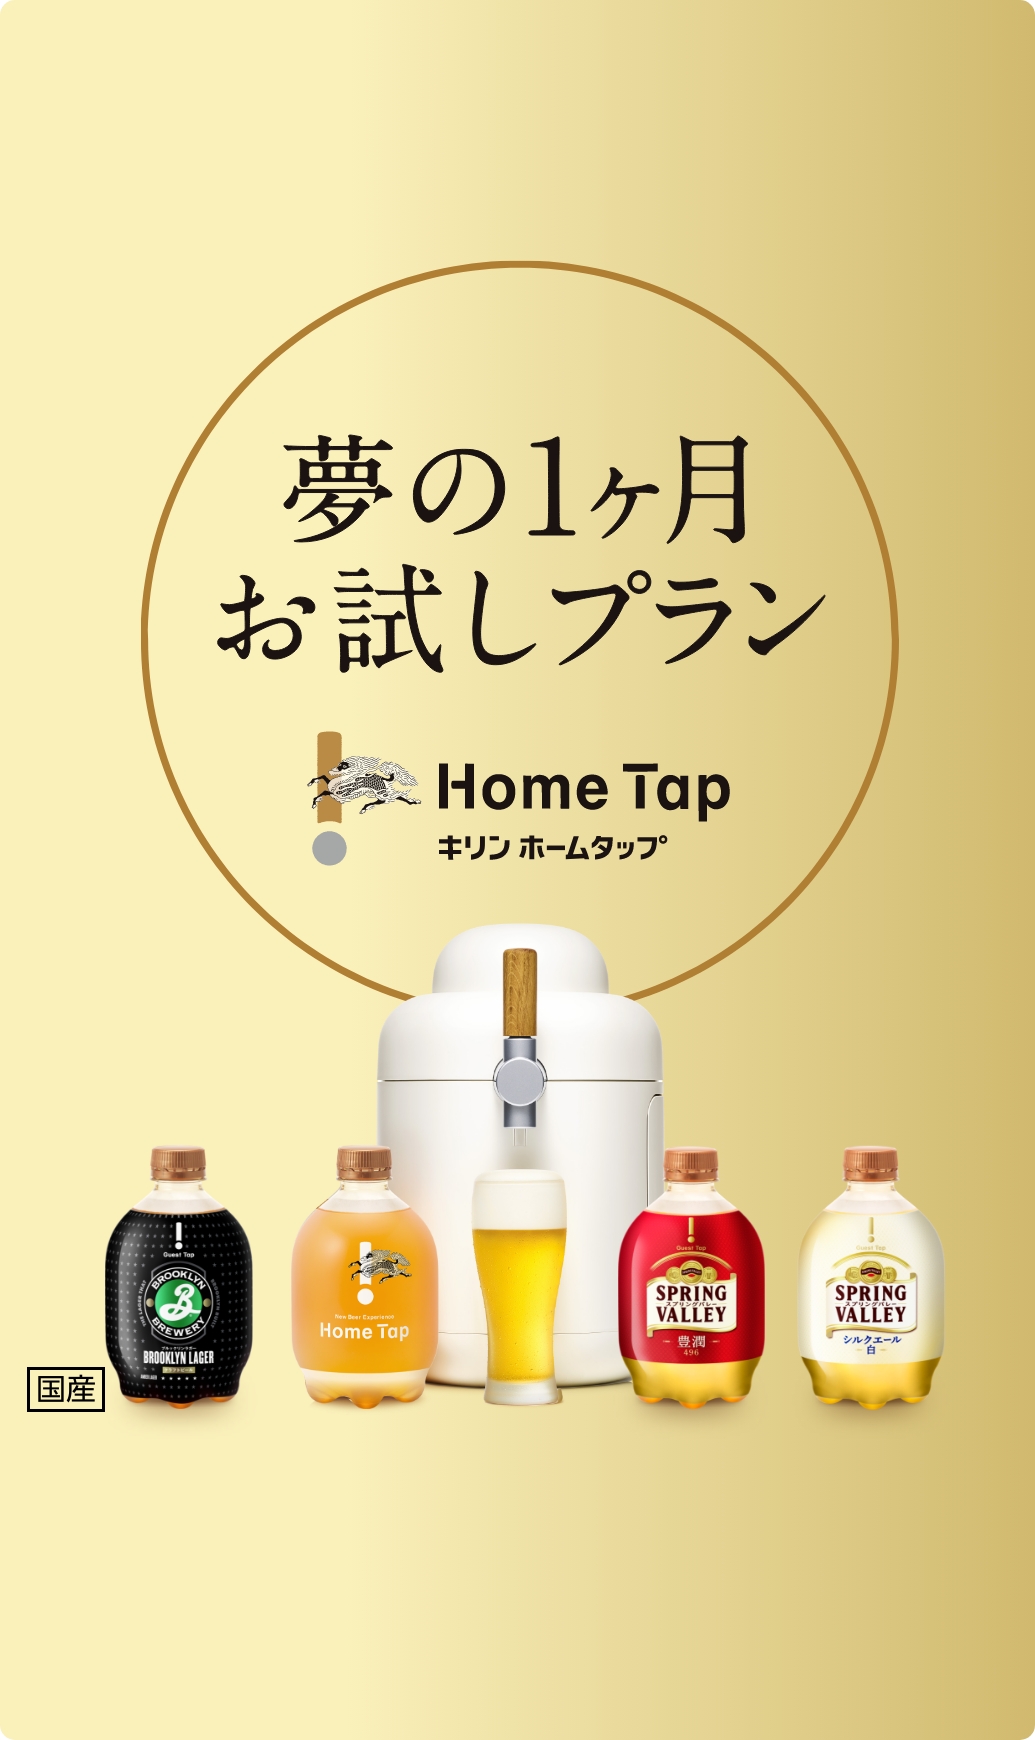 キリン ホームタップ 付属品セット - ビール・発泡酒